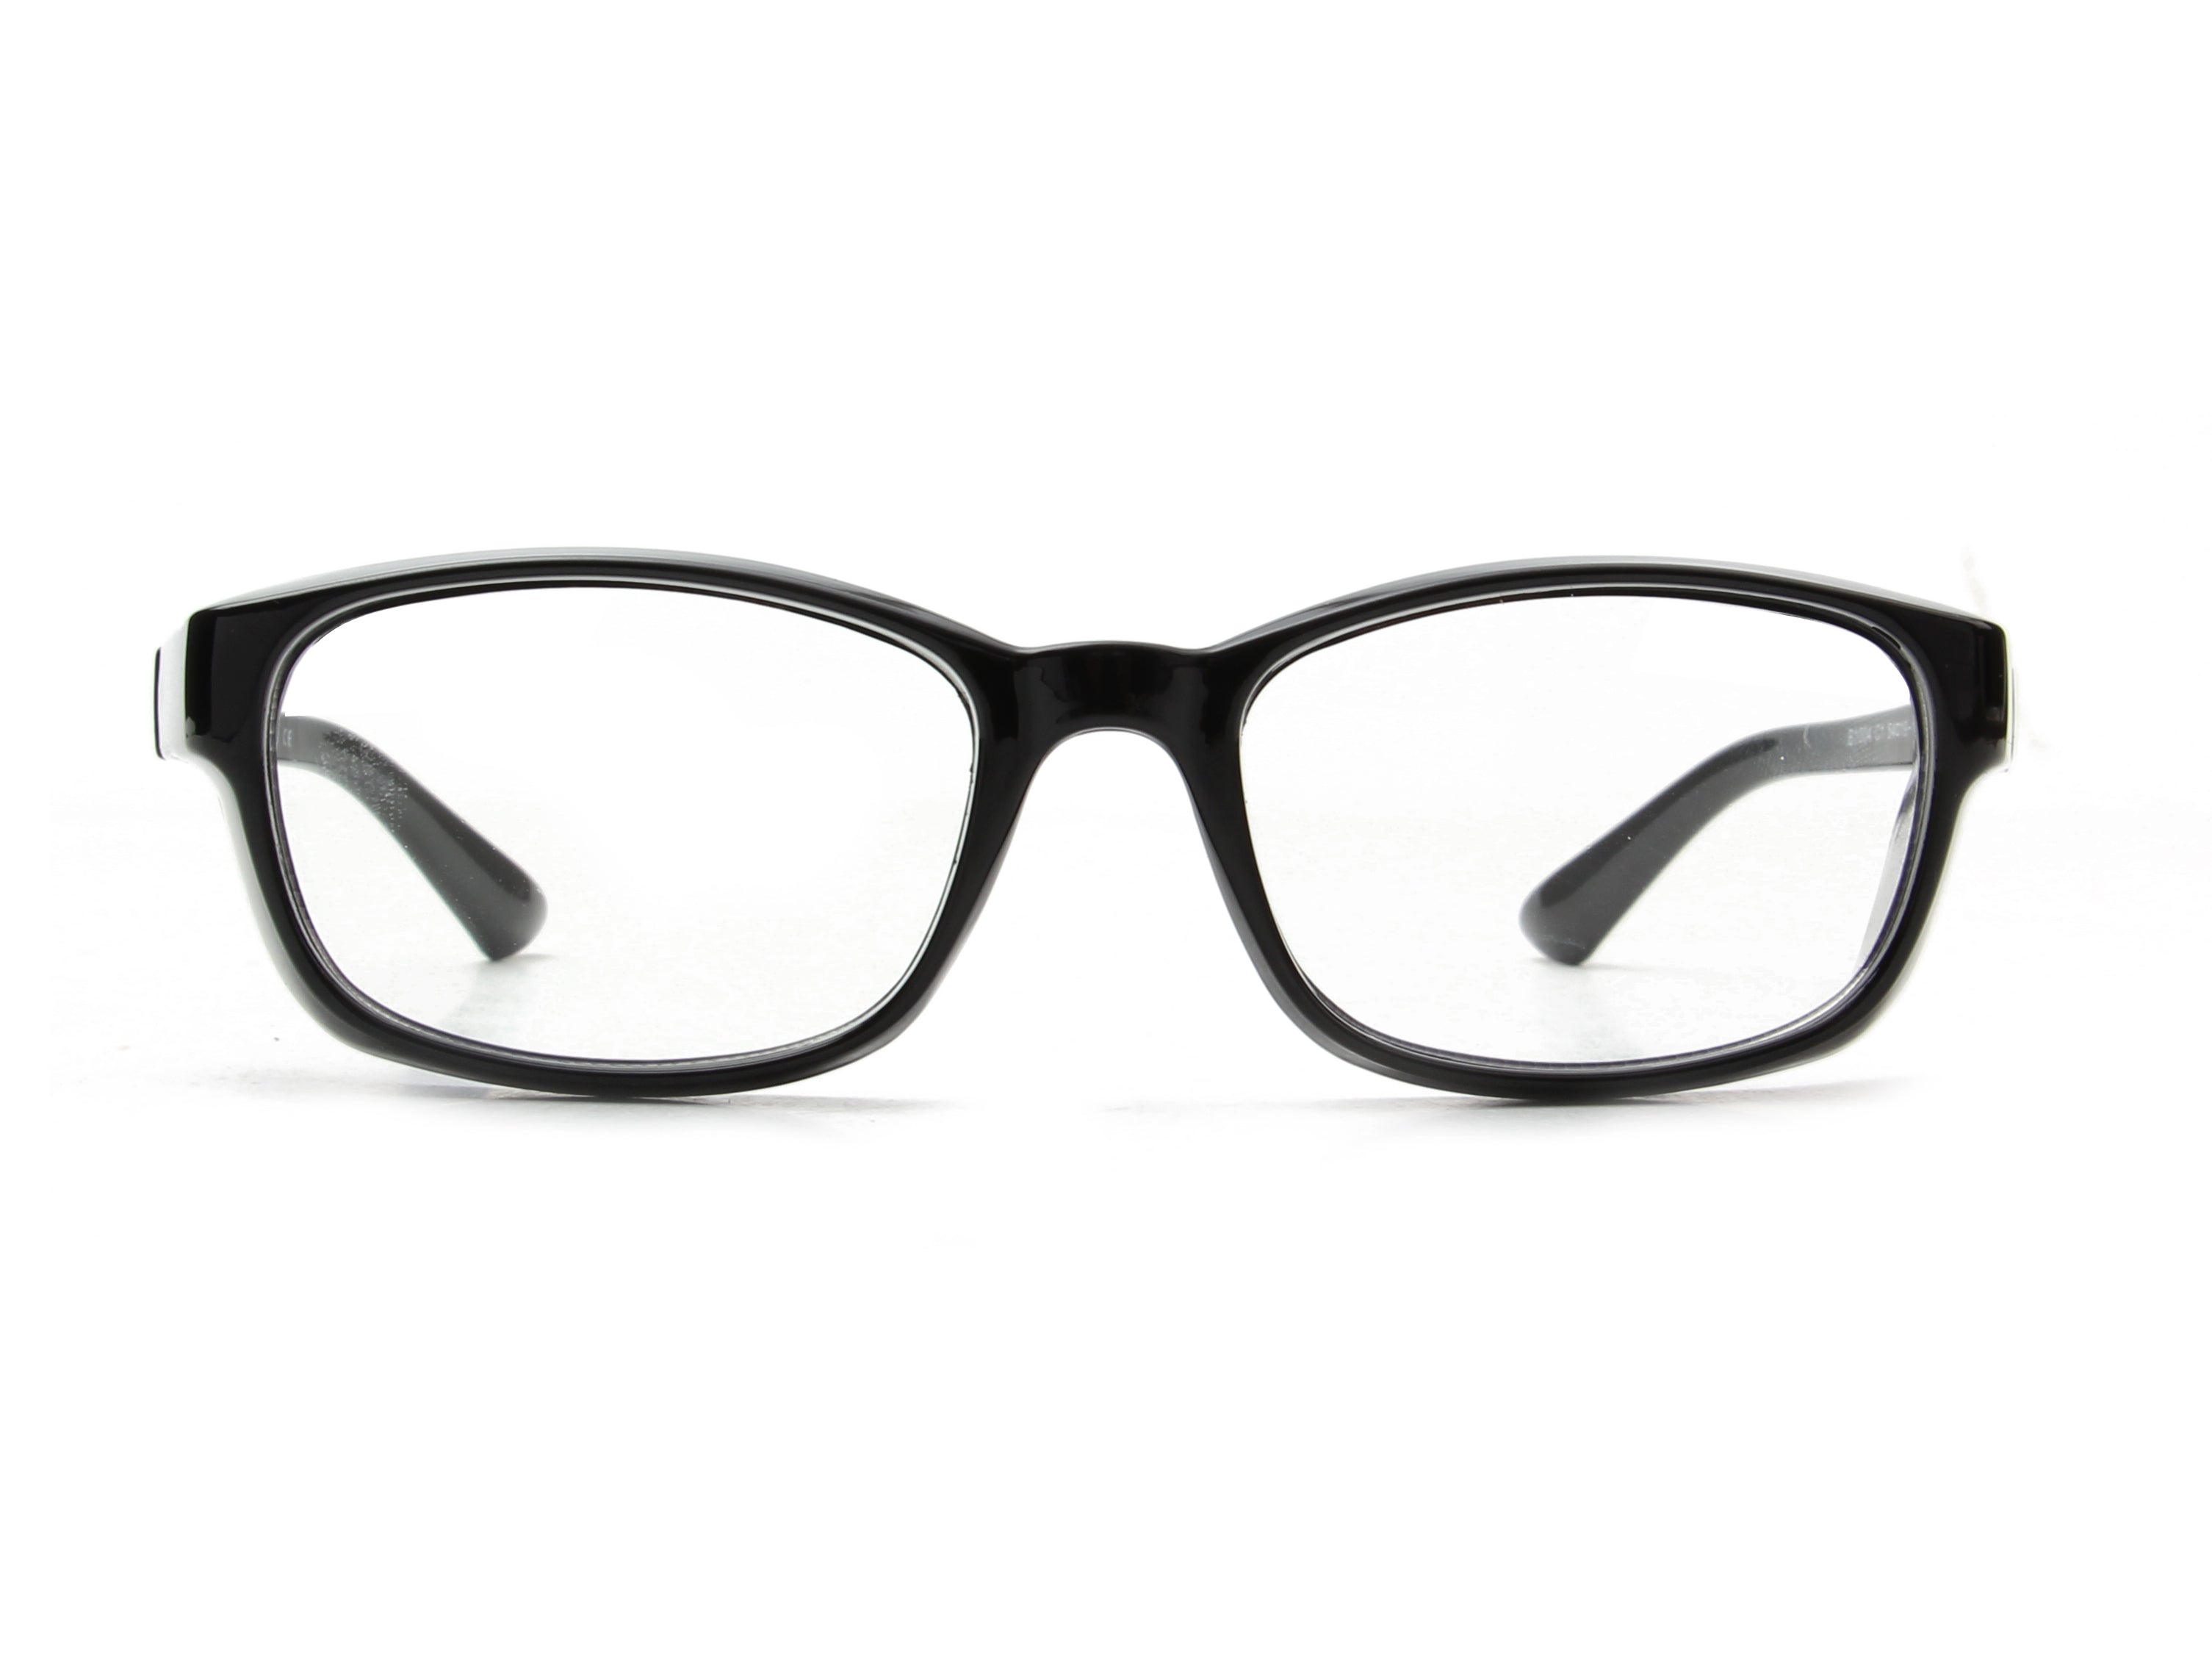 B1004 - Classic Rectangle Sports Wrap Blue Light Blocker Glasses Black